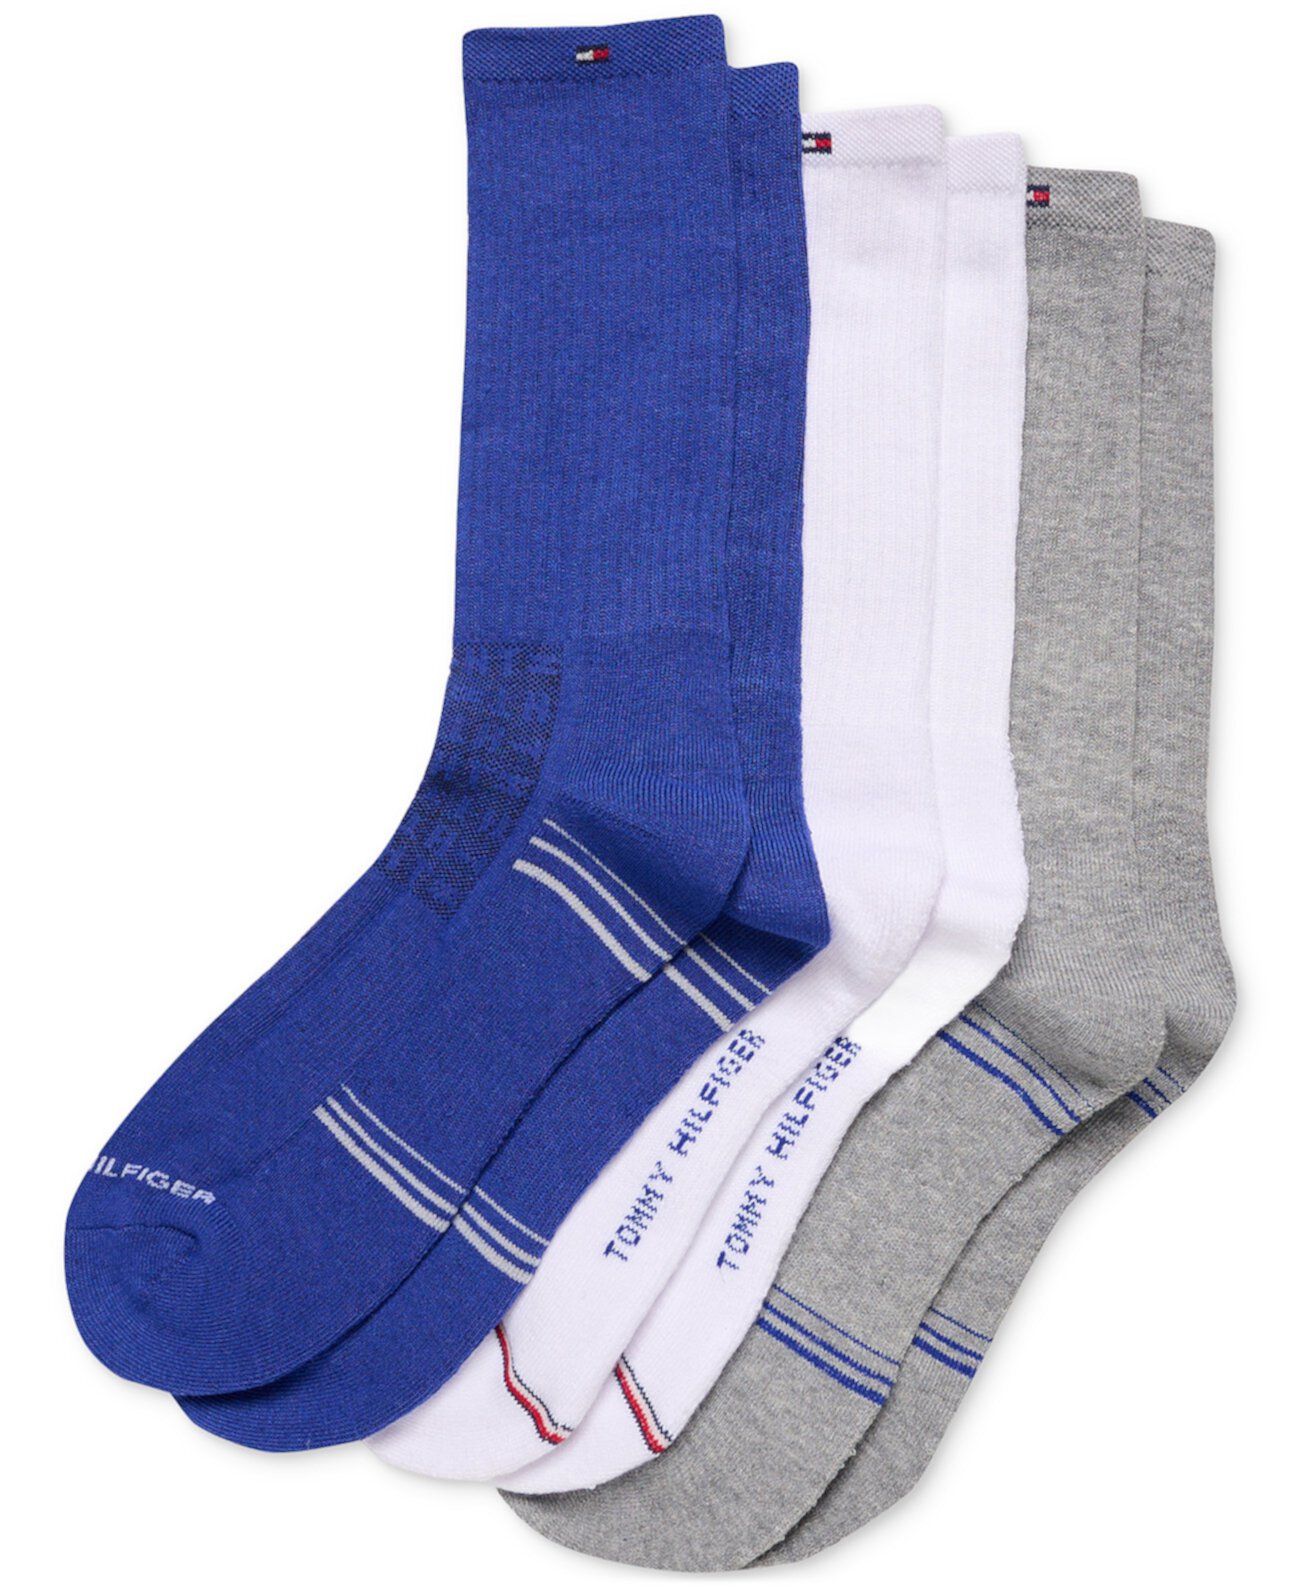 Мужские носки средней длины с мягкой подкладкой, разные узоры, упаковка из 3 шт. Tommy Hilfiger